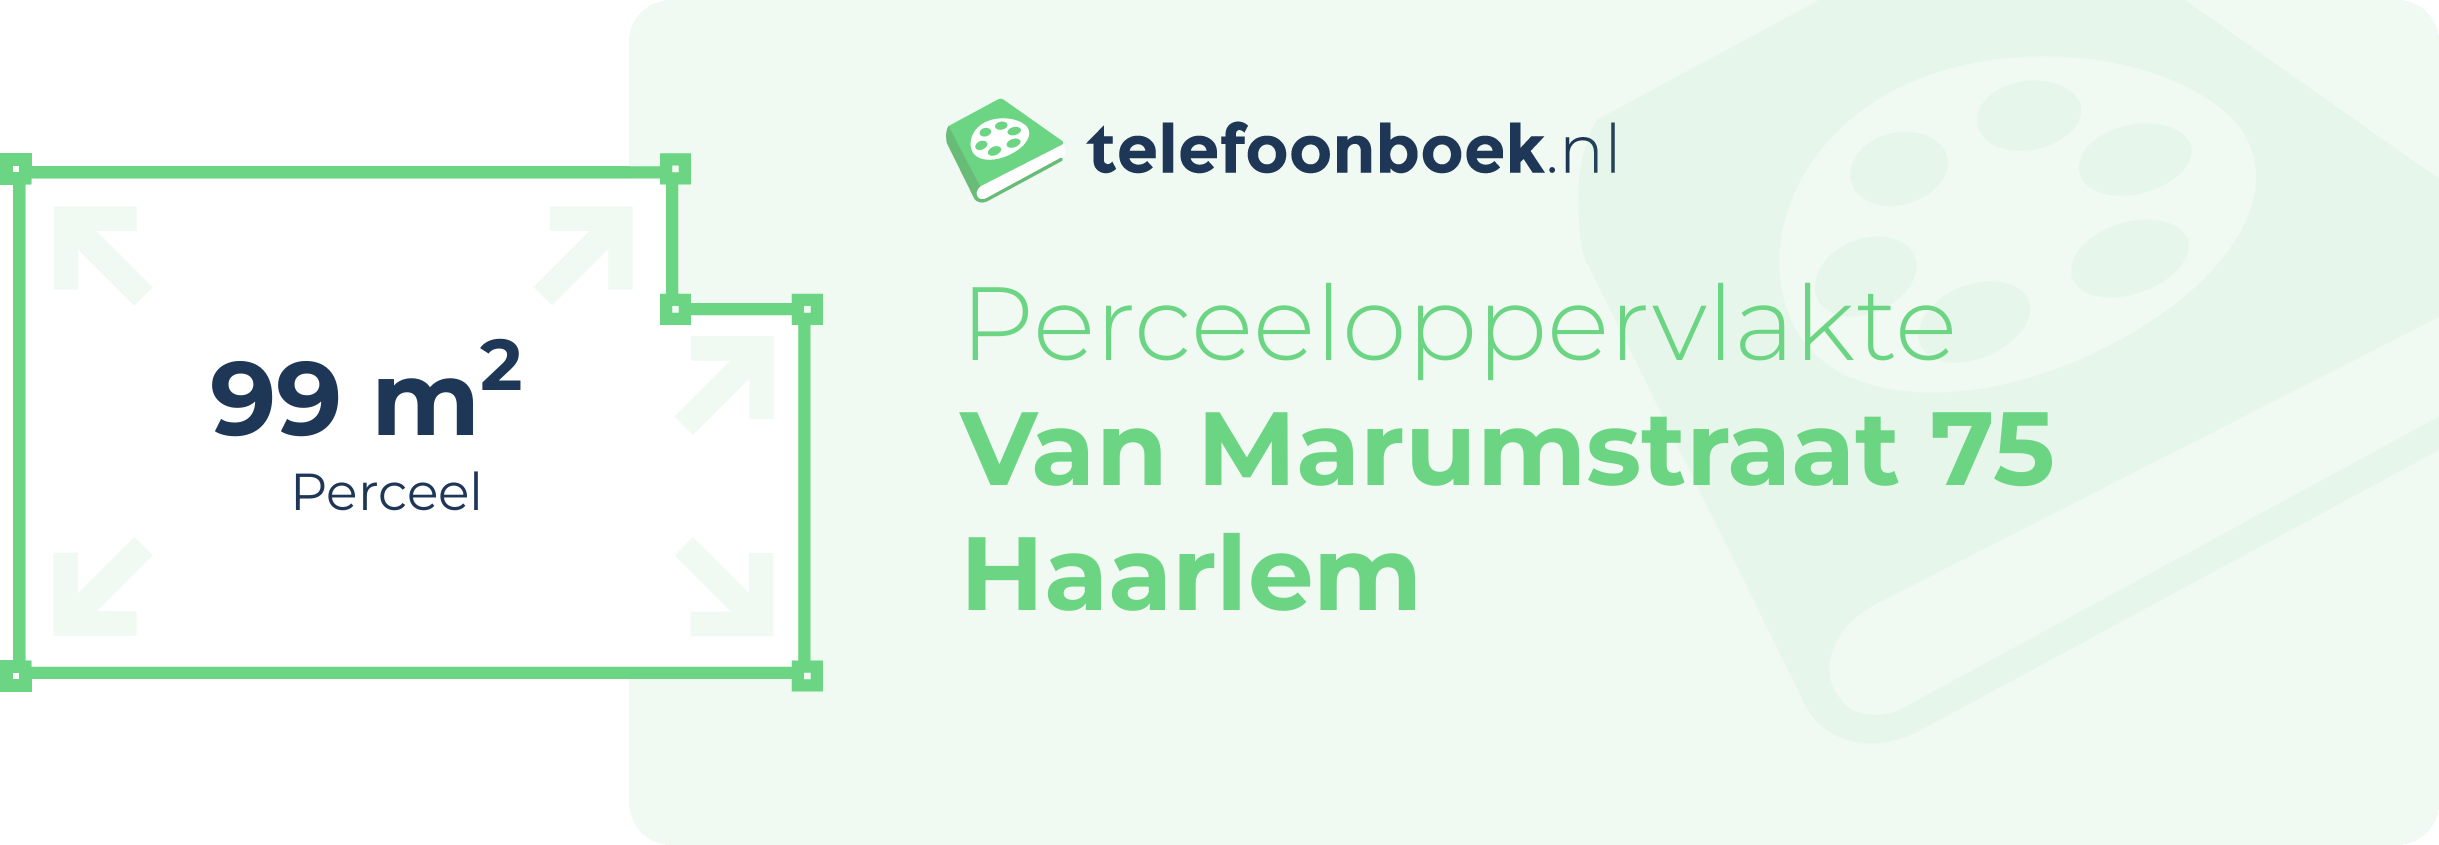 Perceeloppervlakte Van Marumstraat 75 Haarlem